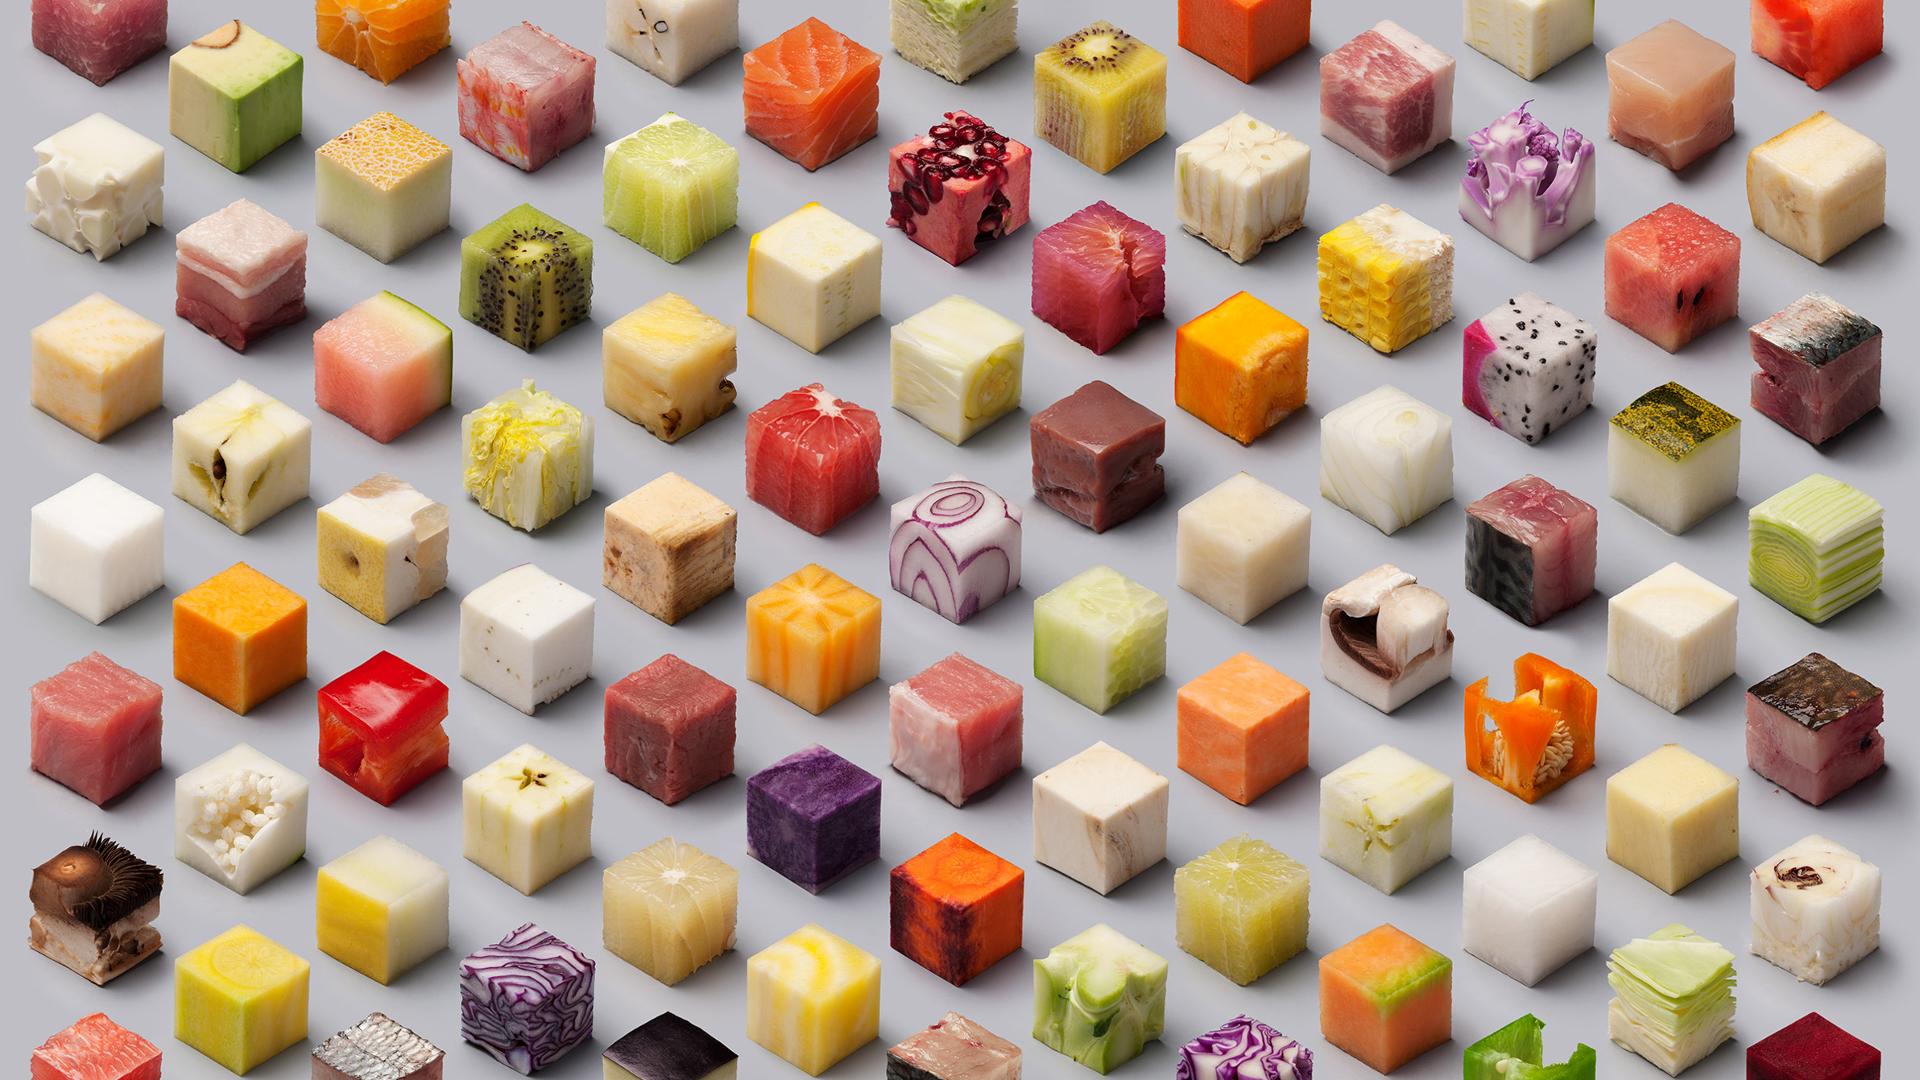 Wallpaper Cubes food items